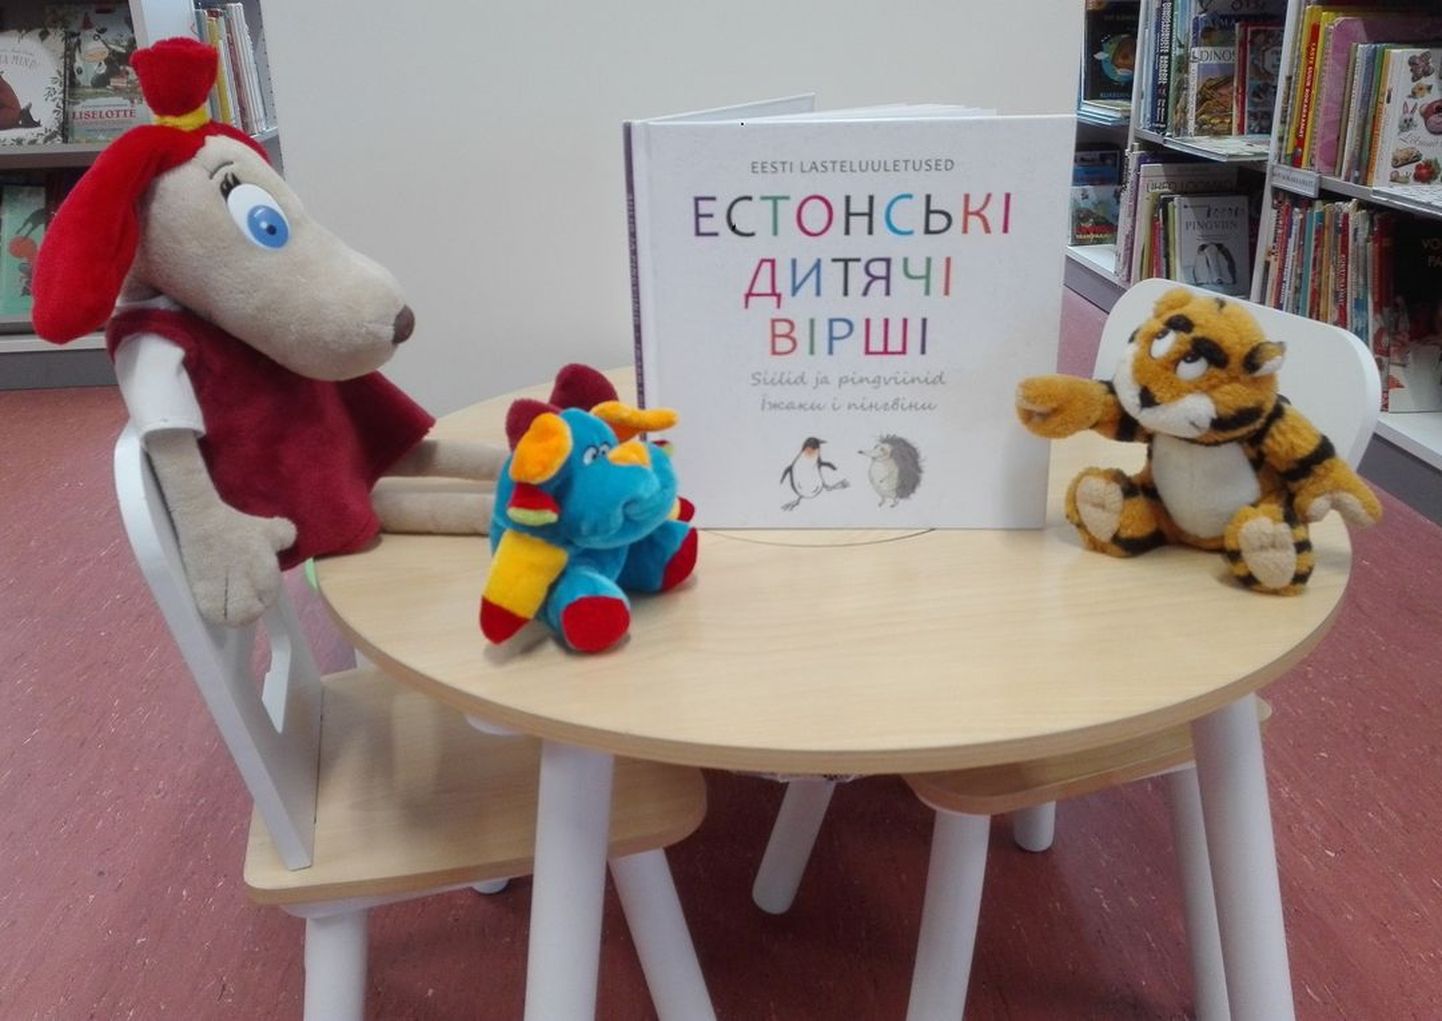 Türi raamatukogu sai laenutamiseks esimesed ukrainakeelsed lasteraamatud, kuid nõudlus oleks oluliselt suurem.